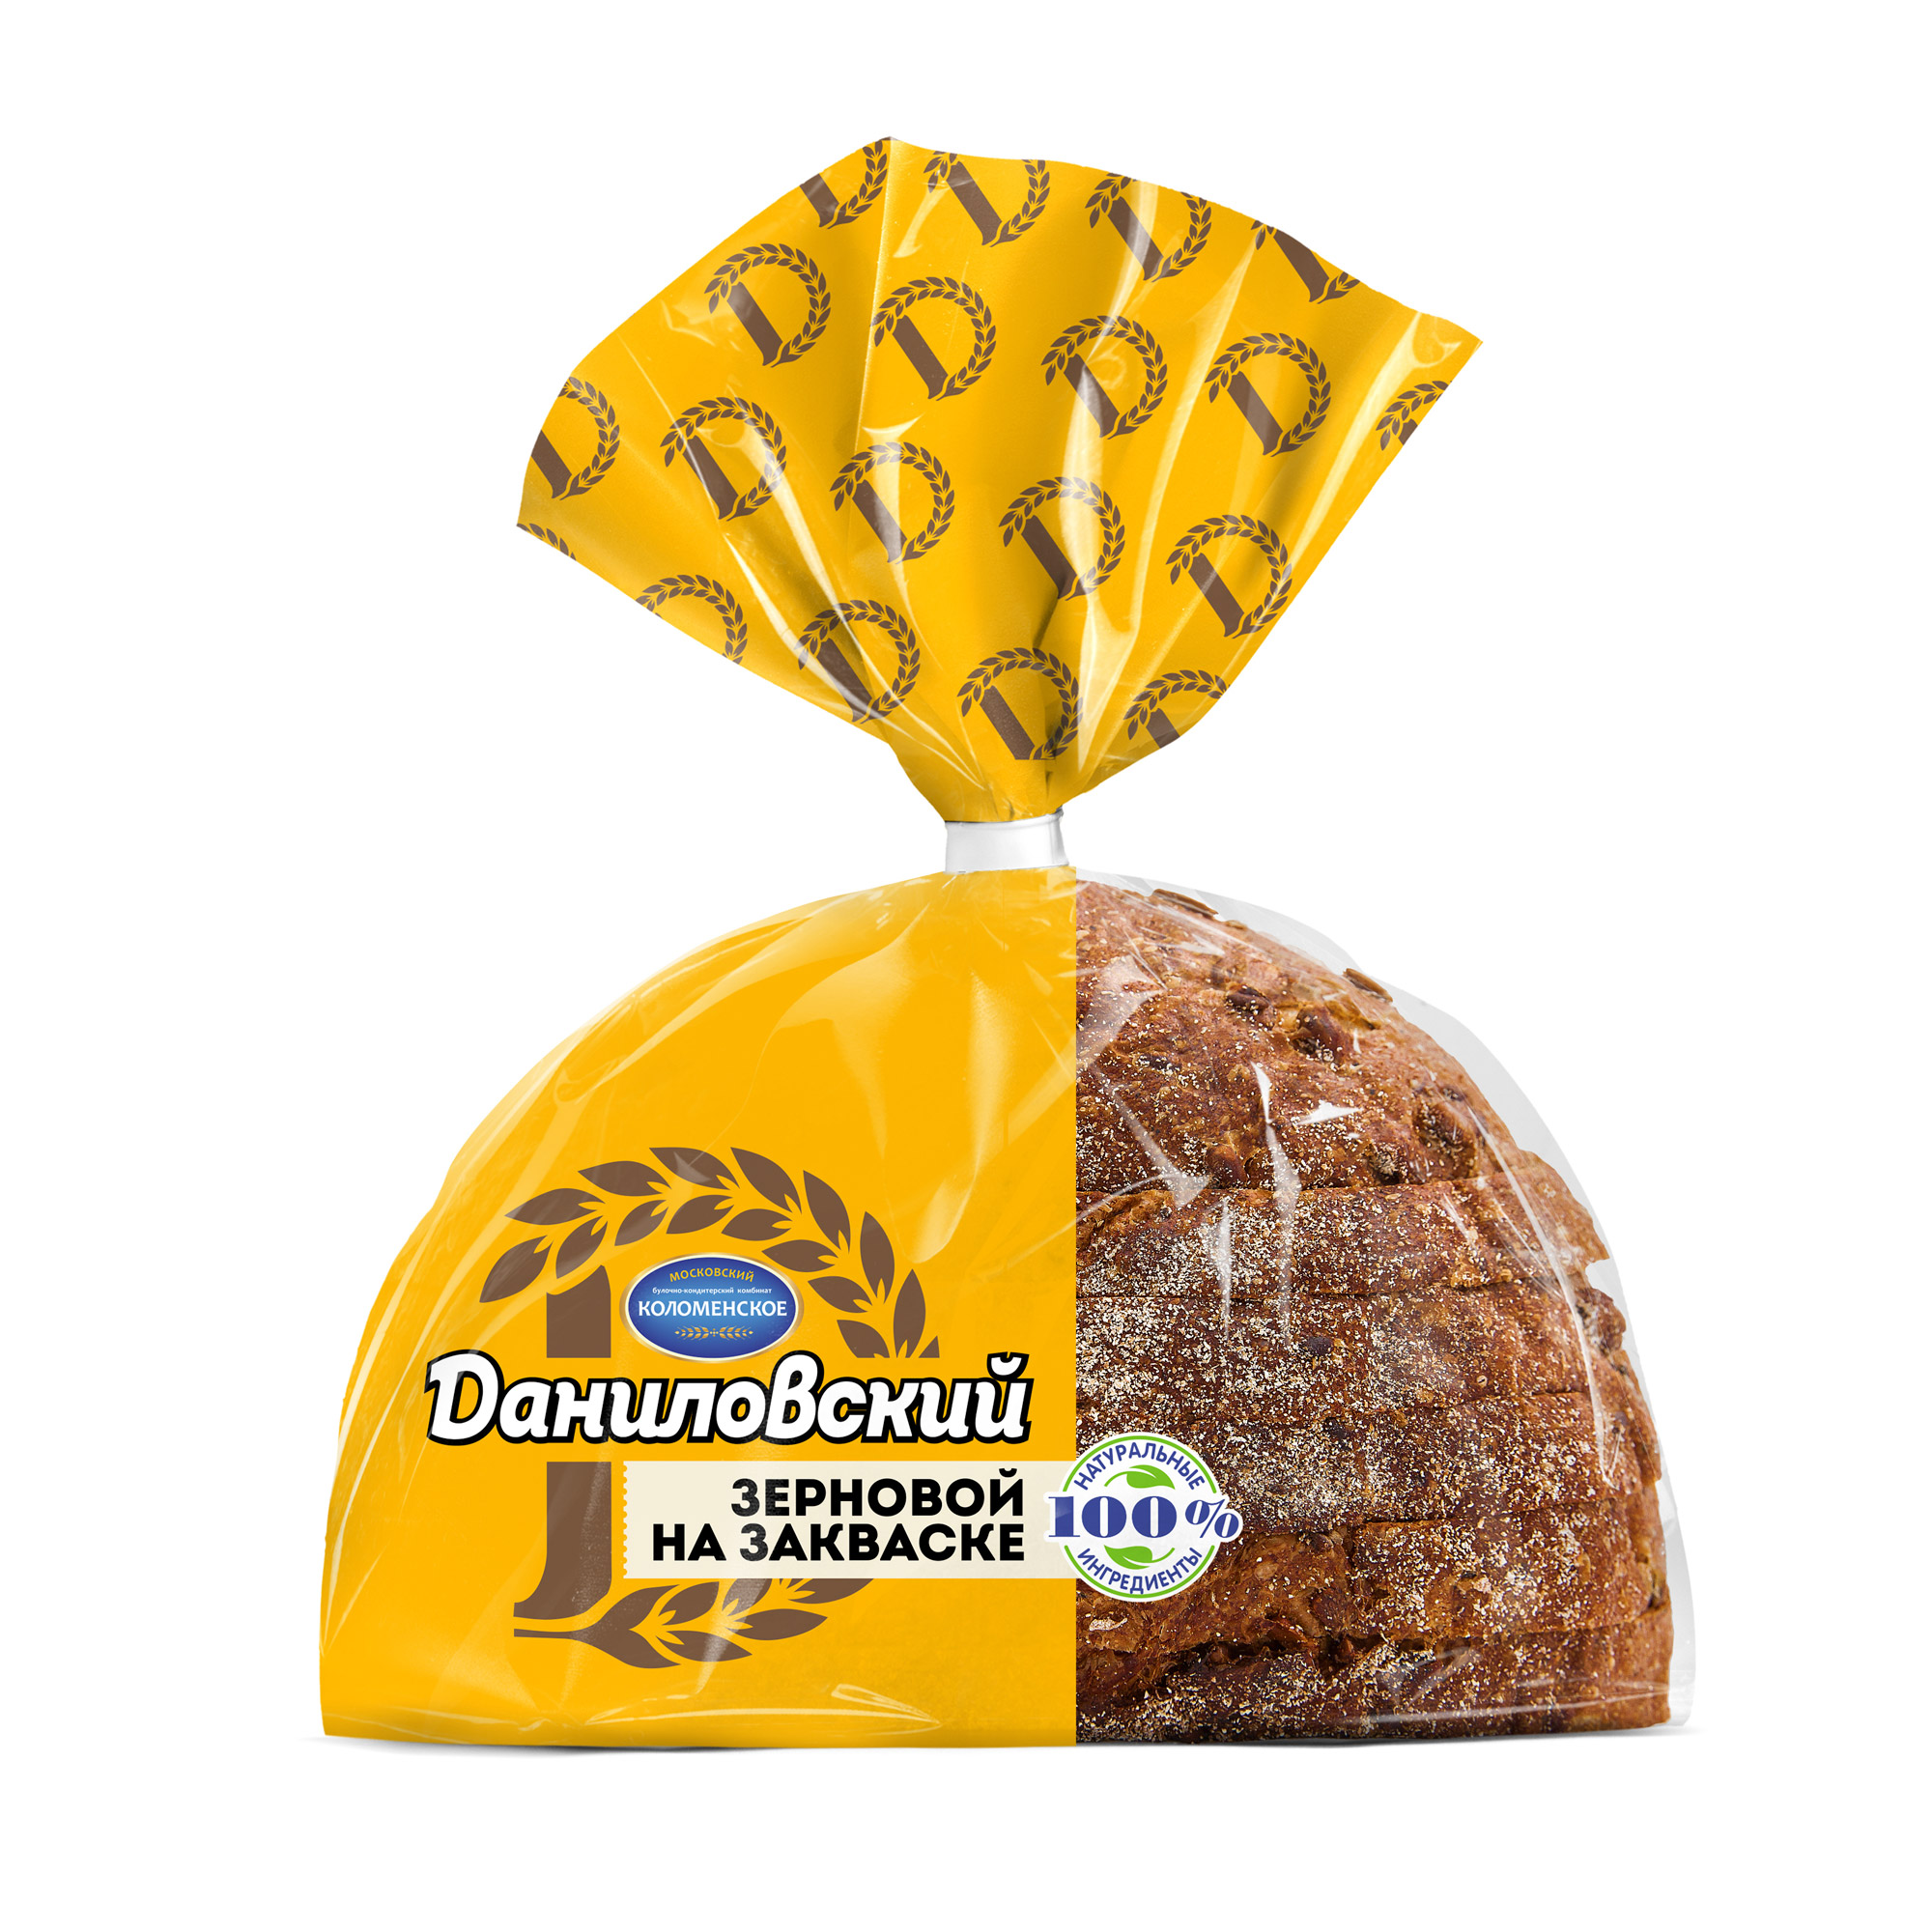 Хлеб Даниловский зерновой в нарезке 300 г батон зерновой дедовский хлеб истринский нарезанный 300 г